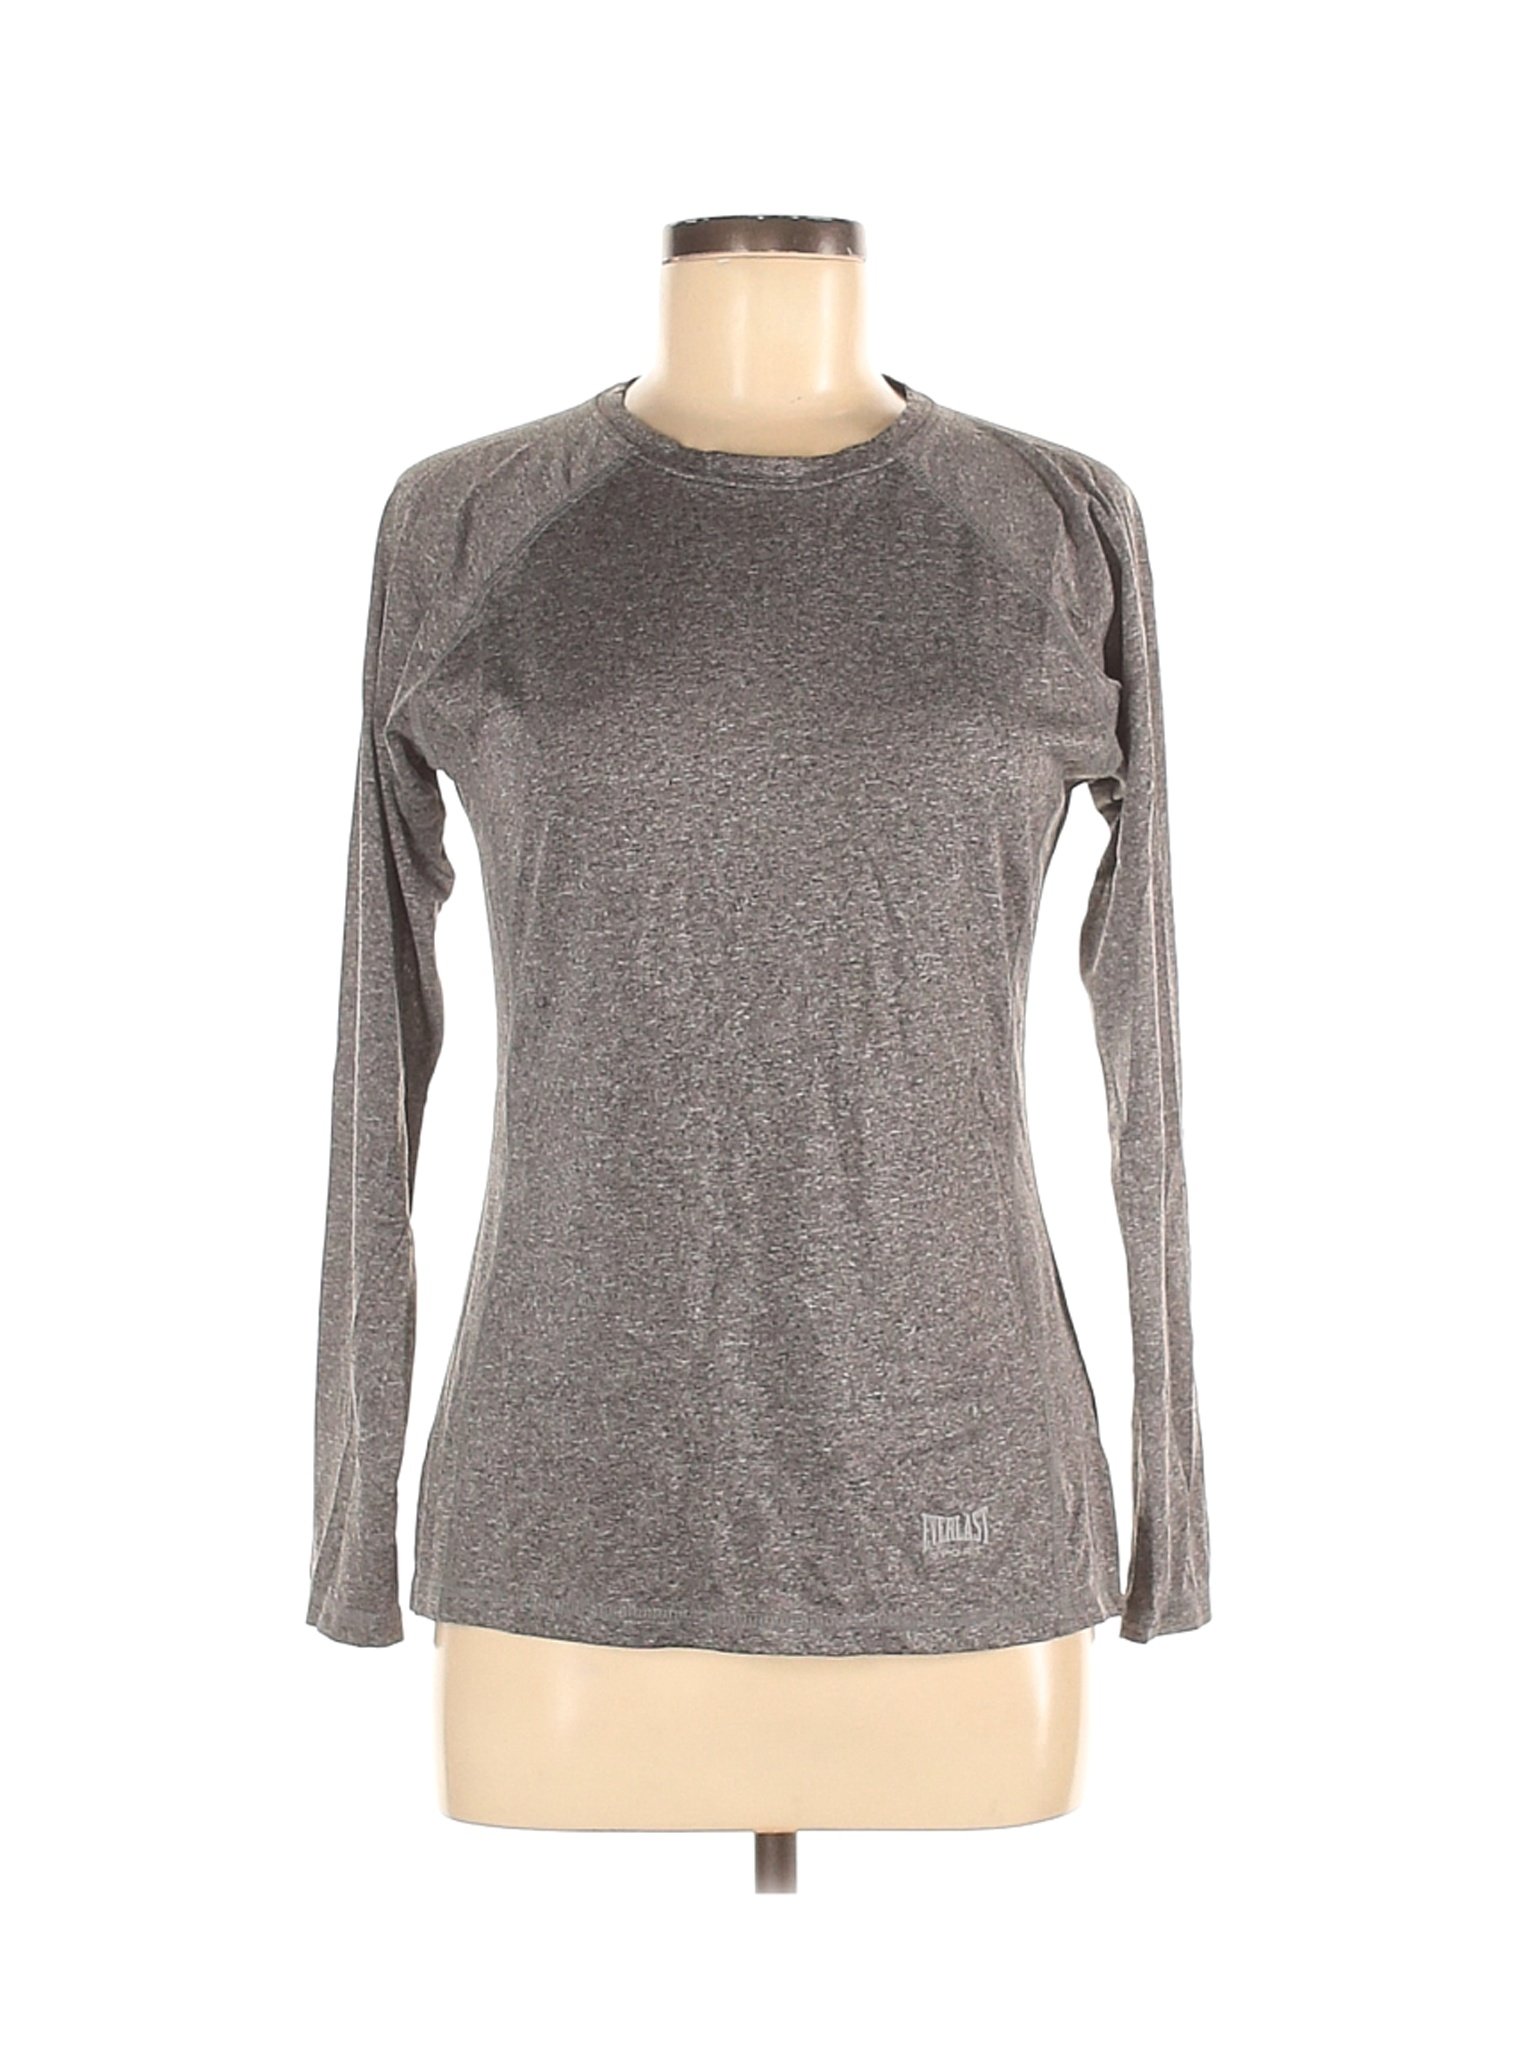 Everlast Women Gray Active T-Shirt M | eBay